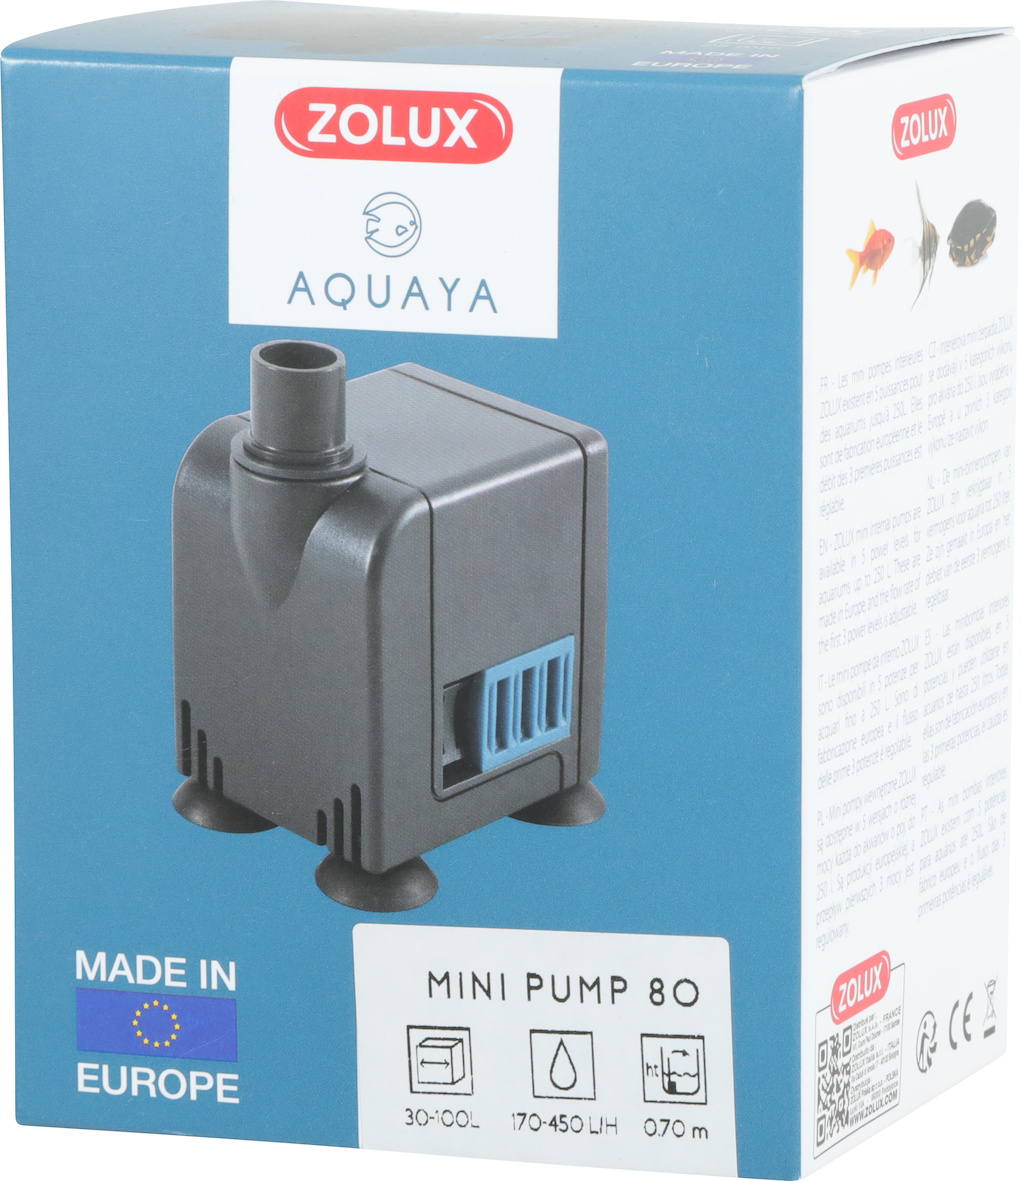 Aquaya 80 Minipumpe – Durchfluss von 170 bis 450 l/h